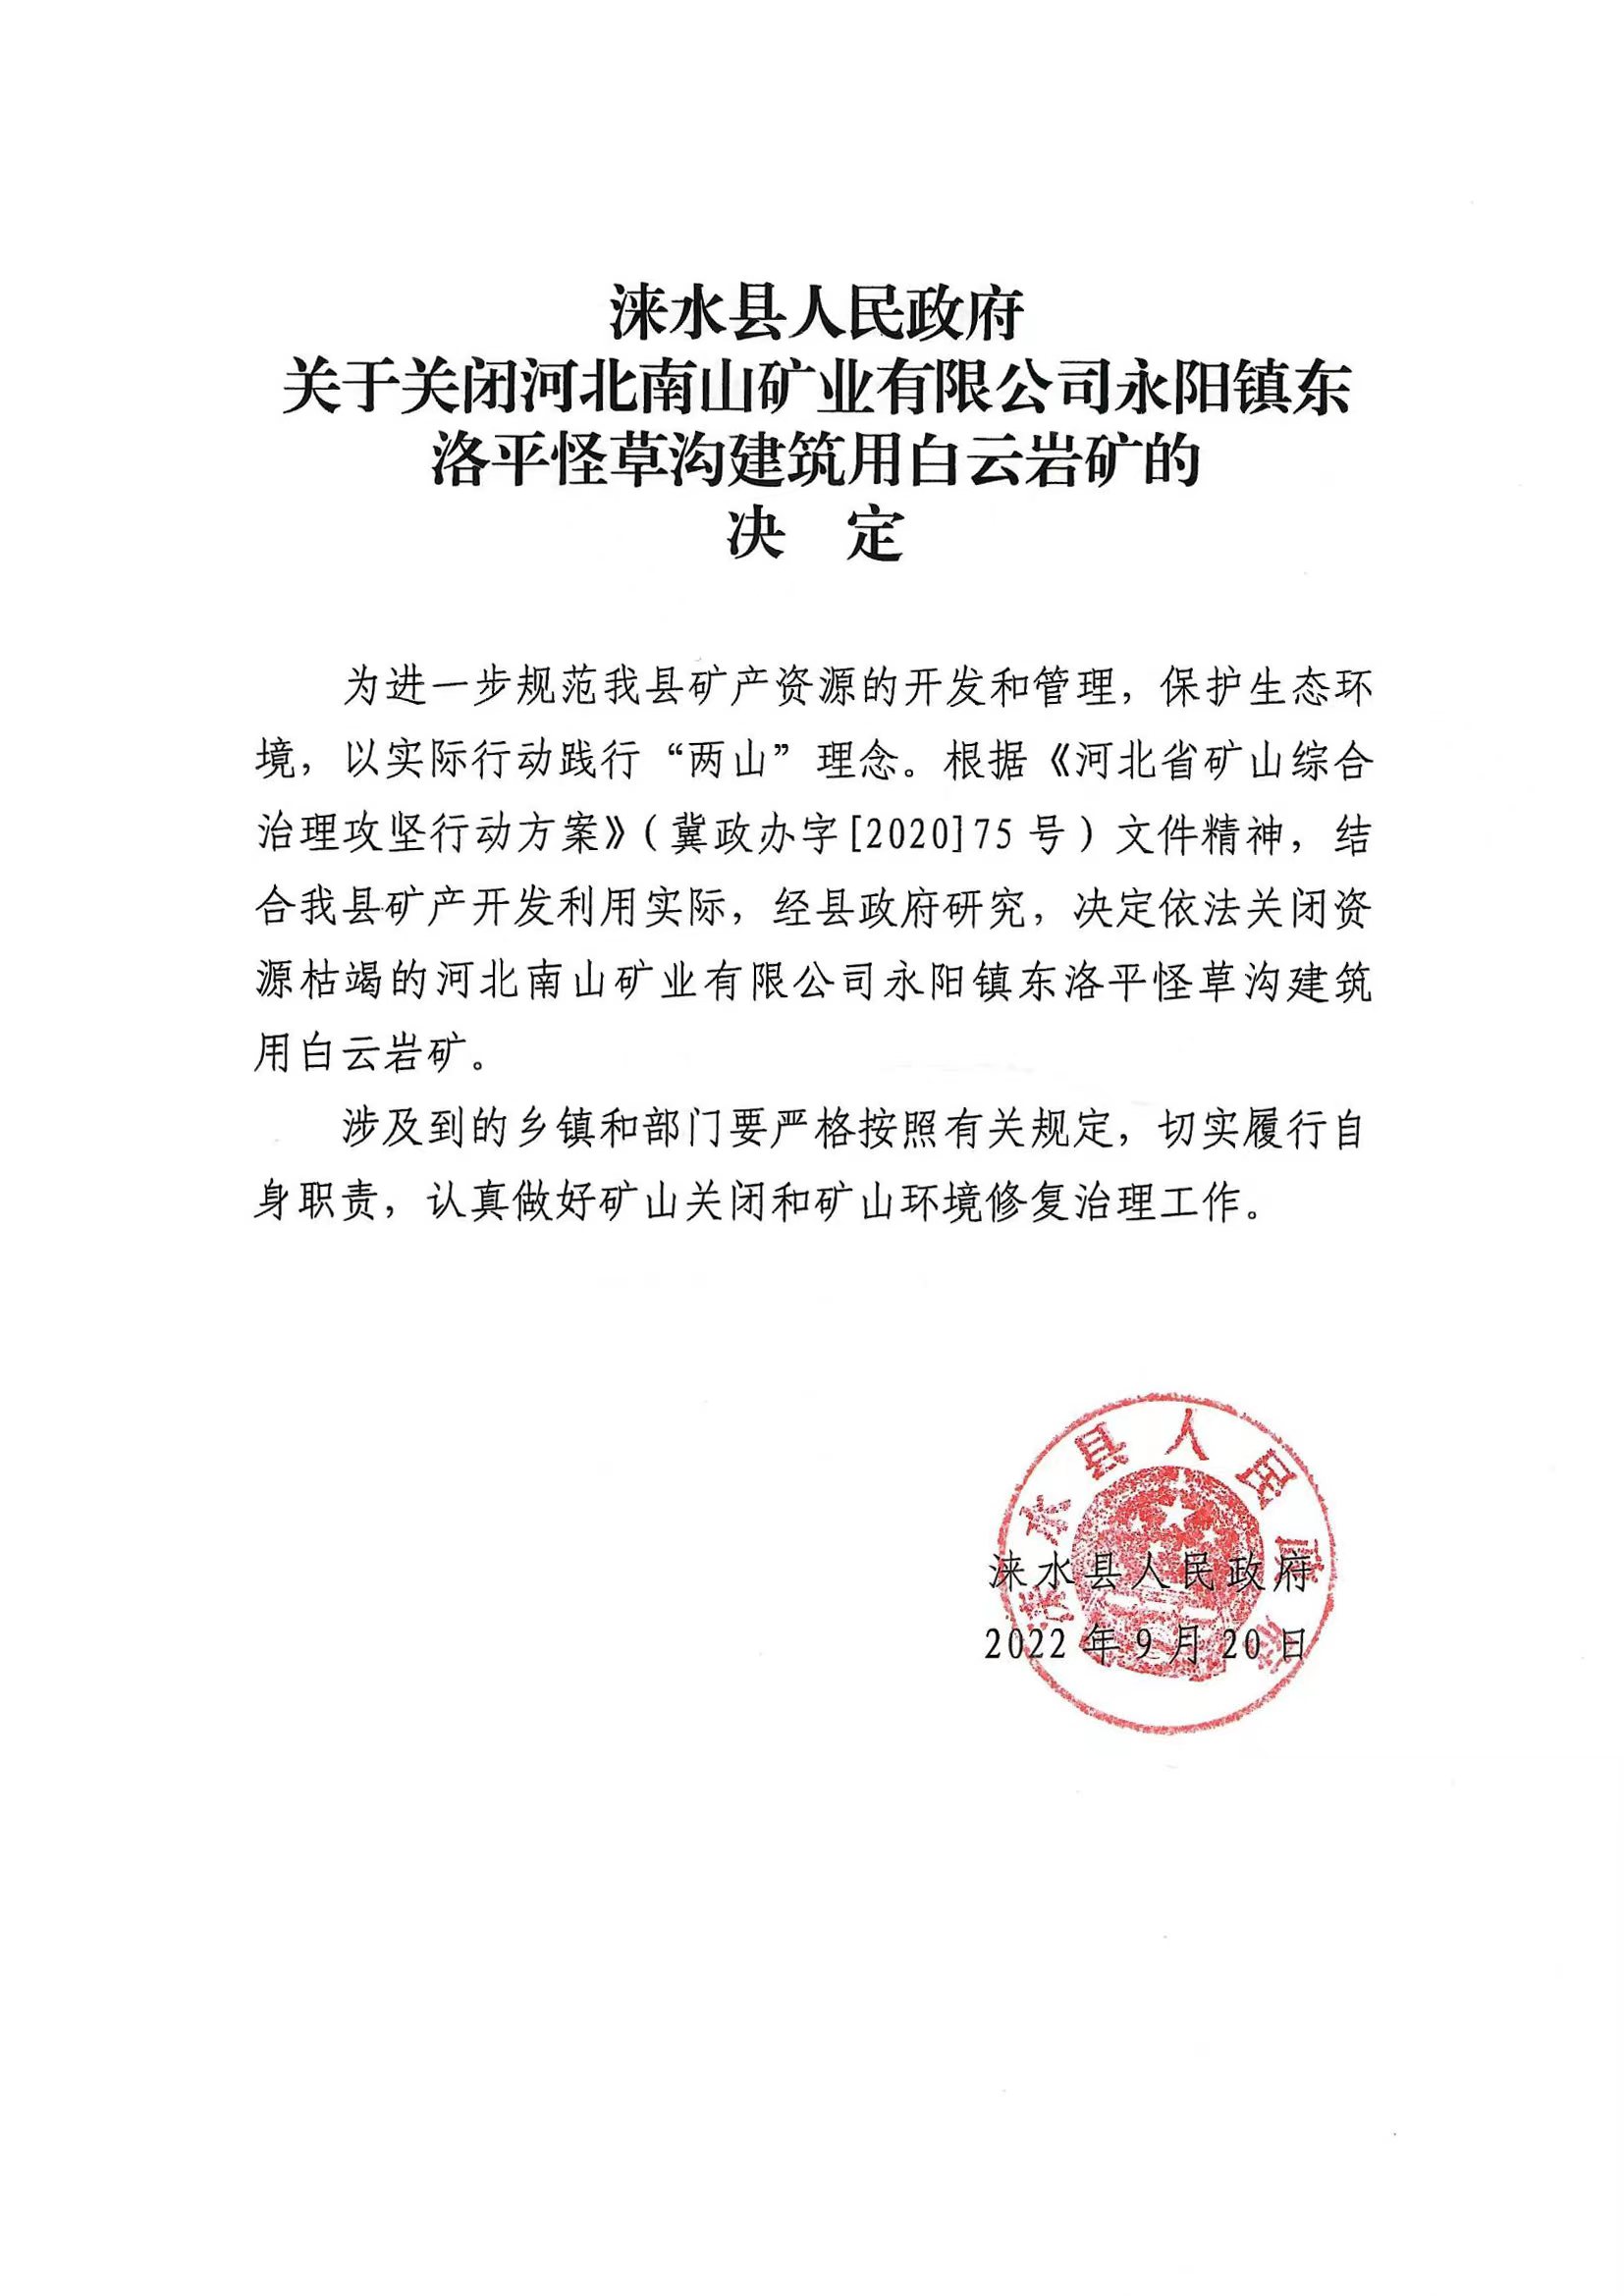 涞水县人民政府关于关闭矿山的决定2022.9.22.jpg